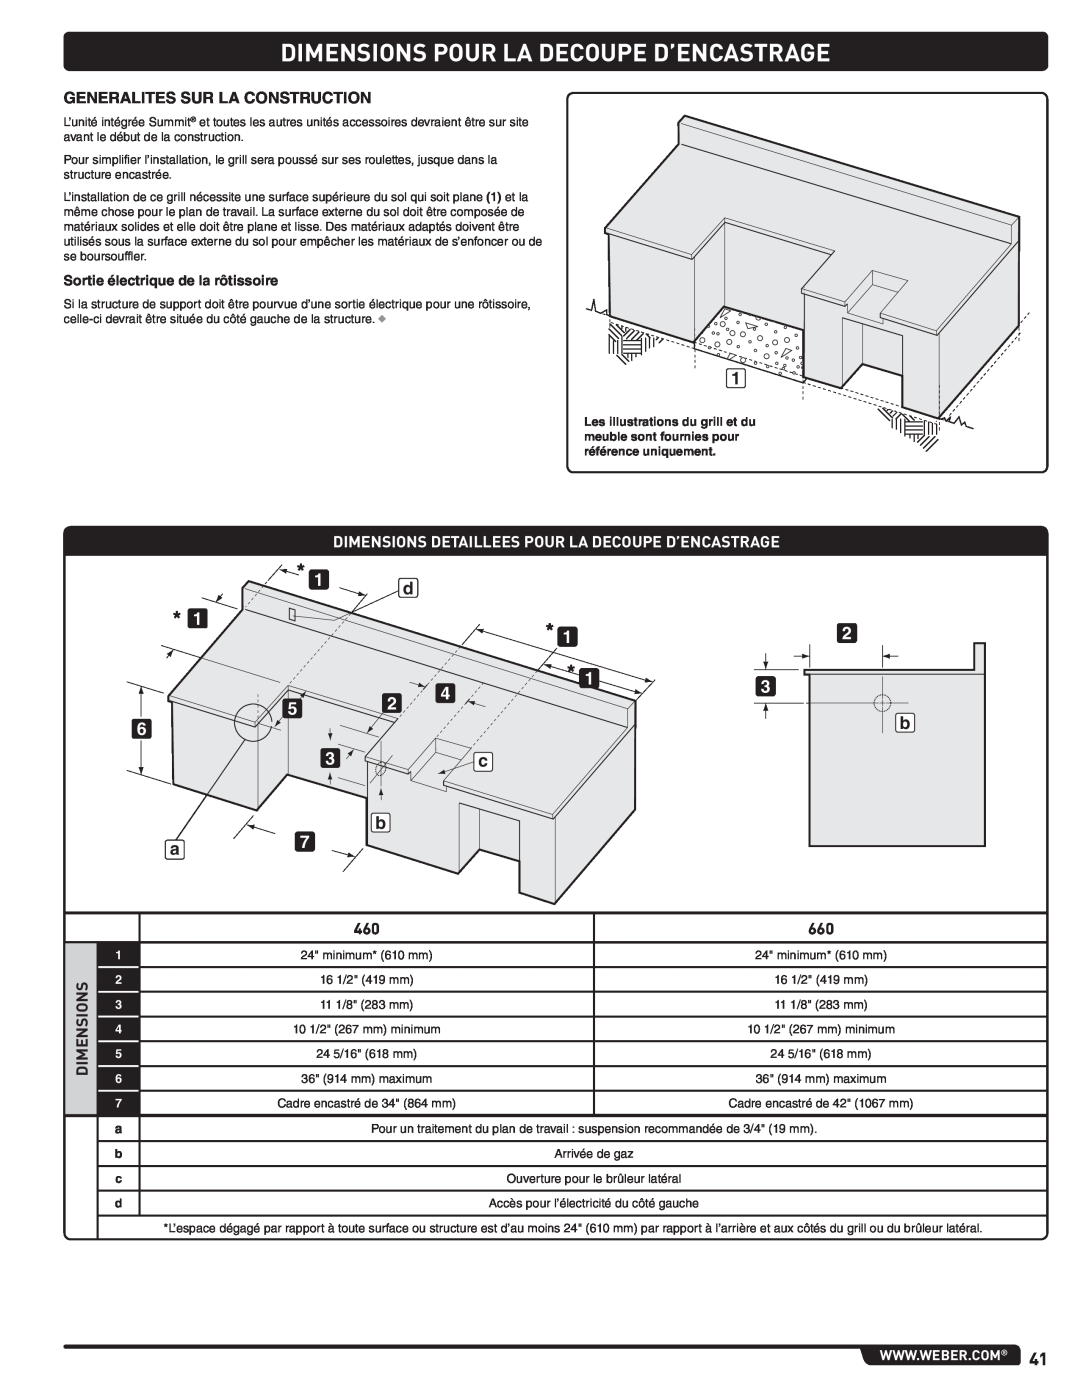 Weber 56576, Summit Gas Grill manual Dimensions Pour La Decoupe D’Encastrage, Generalites Sur La Construction 